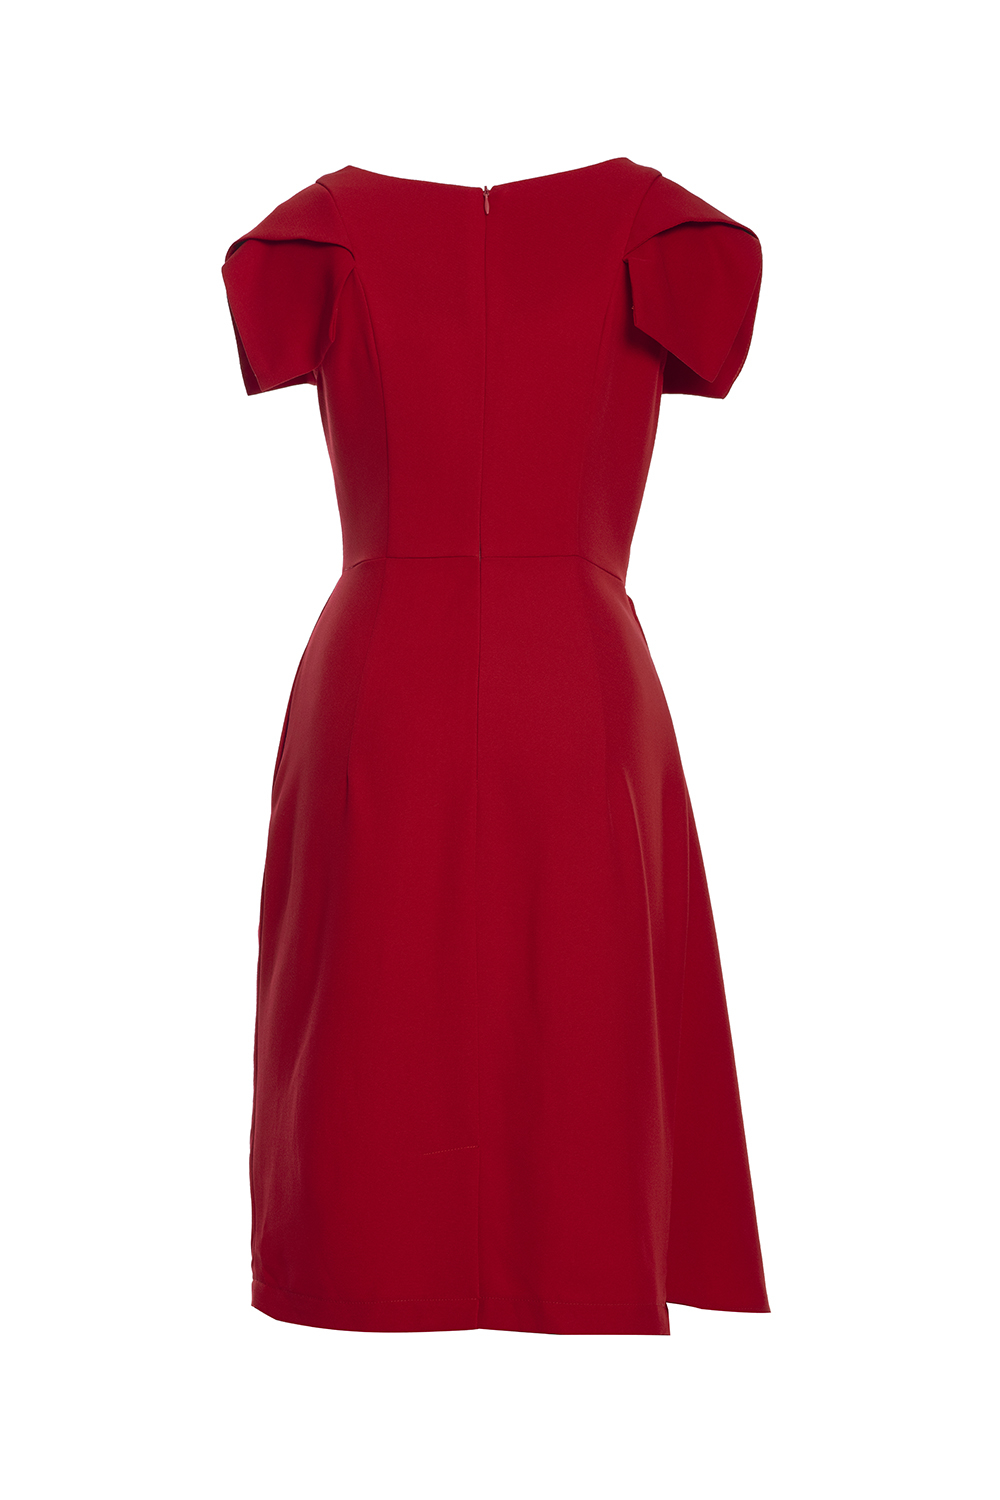 Đầm đỏ dáng chữ A phối bèo KK105-20 | Thời trang công sở K&K Fashion